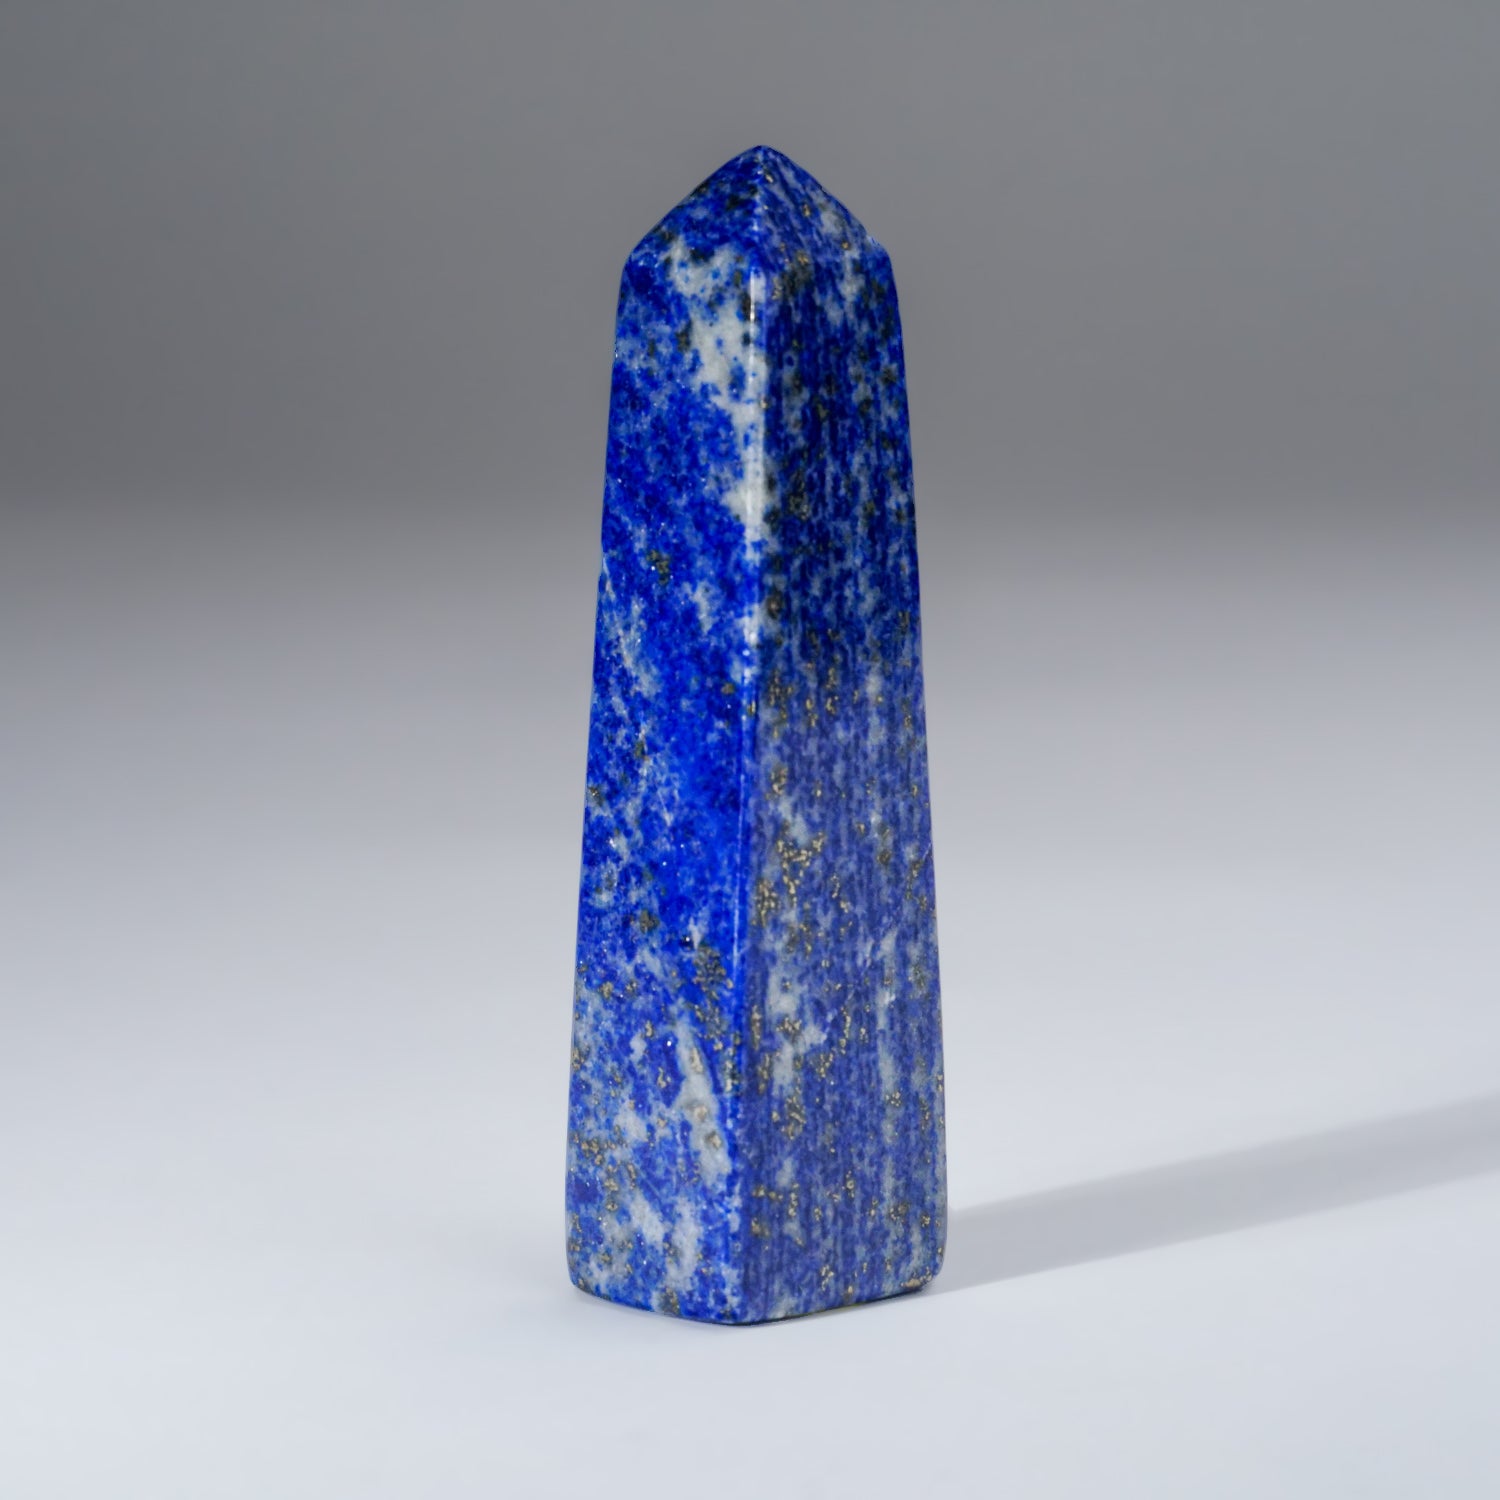 Polished Lapis Lazuli Obelisk from Afghanistan (135 grams)